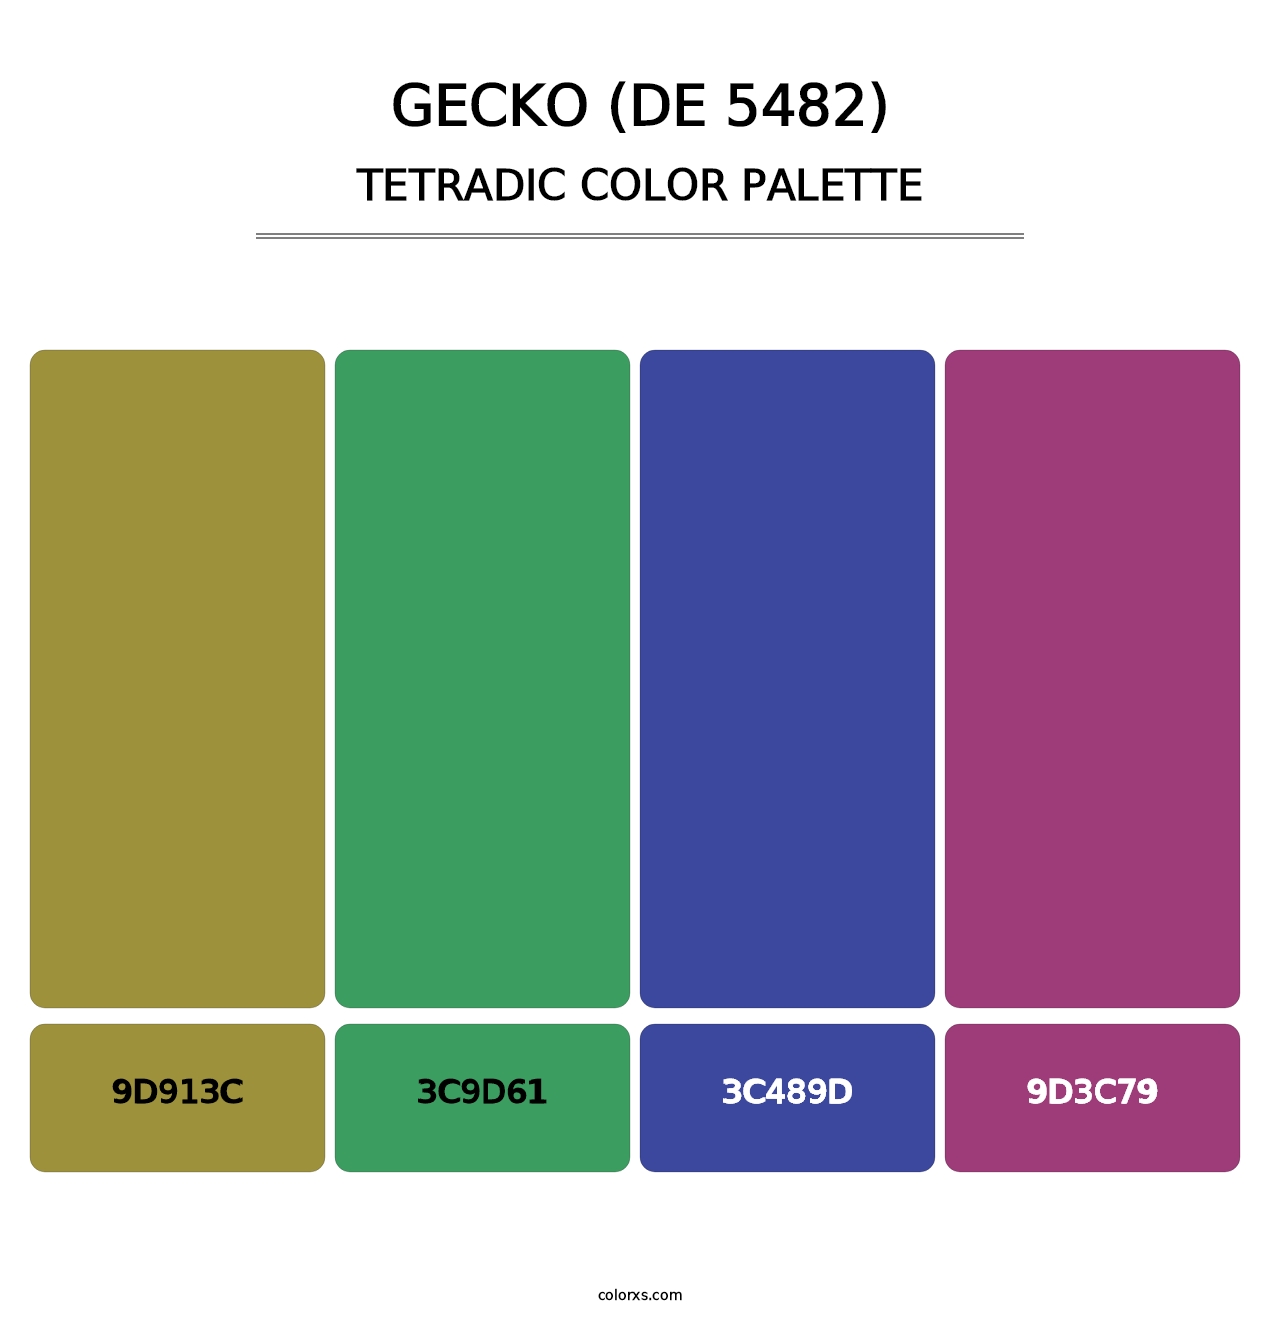 Gecko (DE 5482) - Tetradic Color Palette